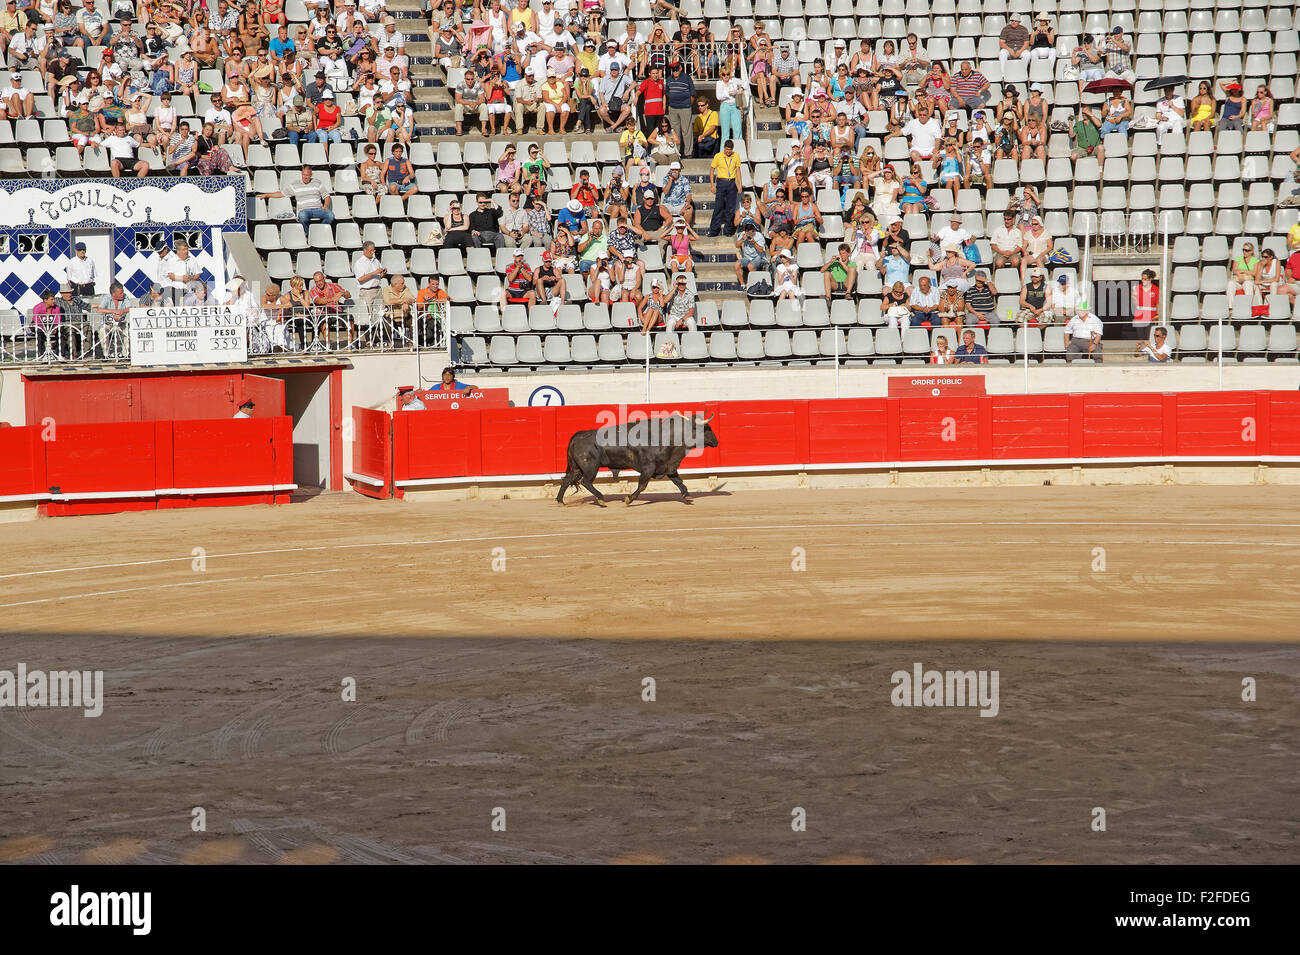 BARCELONA, Spanien - 1. August 2010: Ein Stier in der Arena La Monumental, mit der Matador (Stierkämpfer) in eine eiterung zu kämpfen Stockfoto